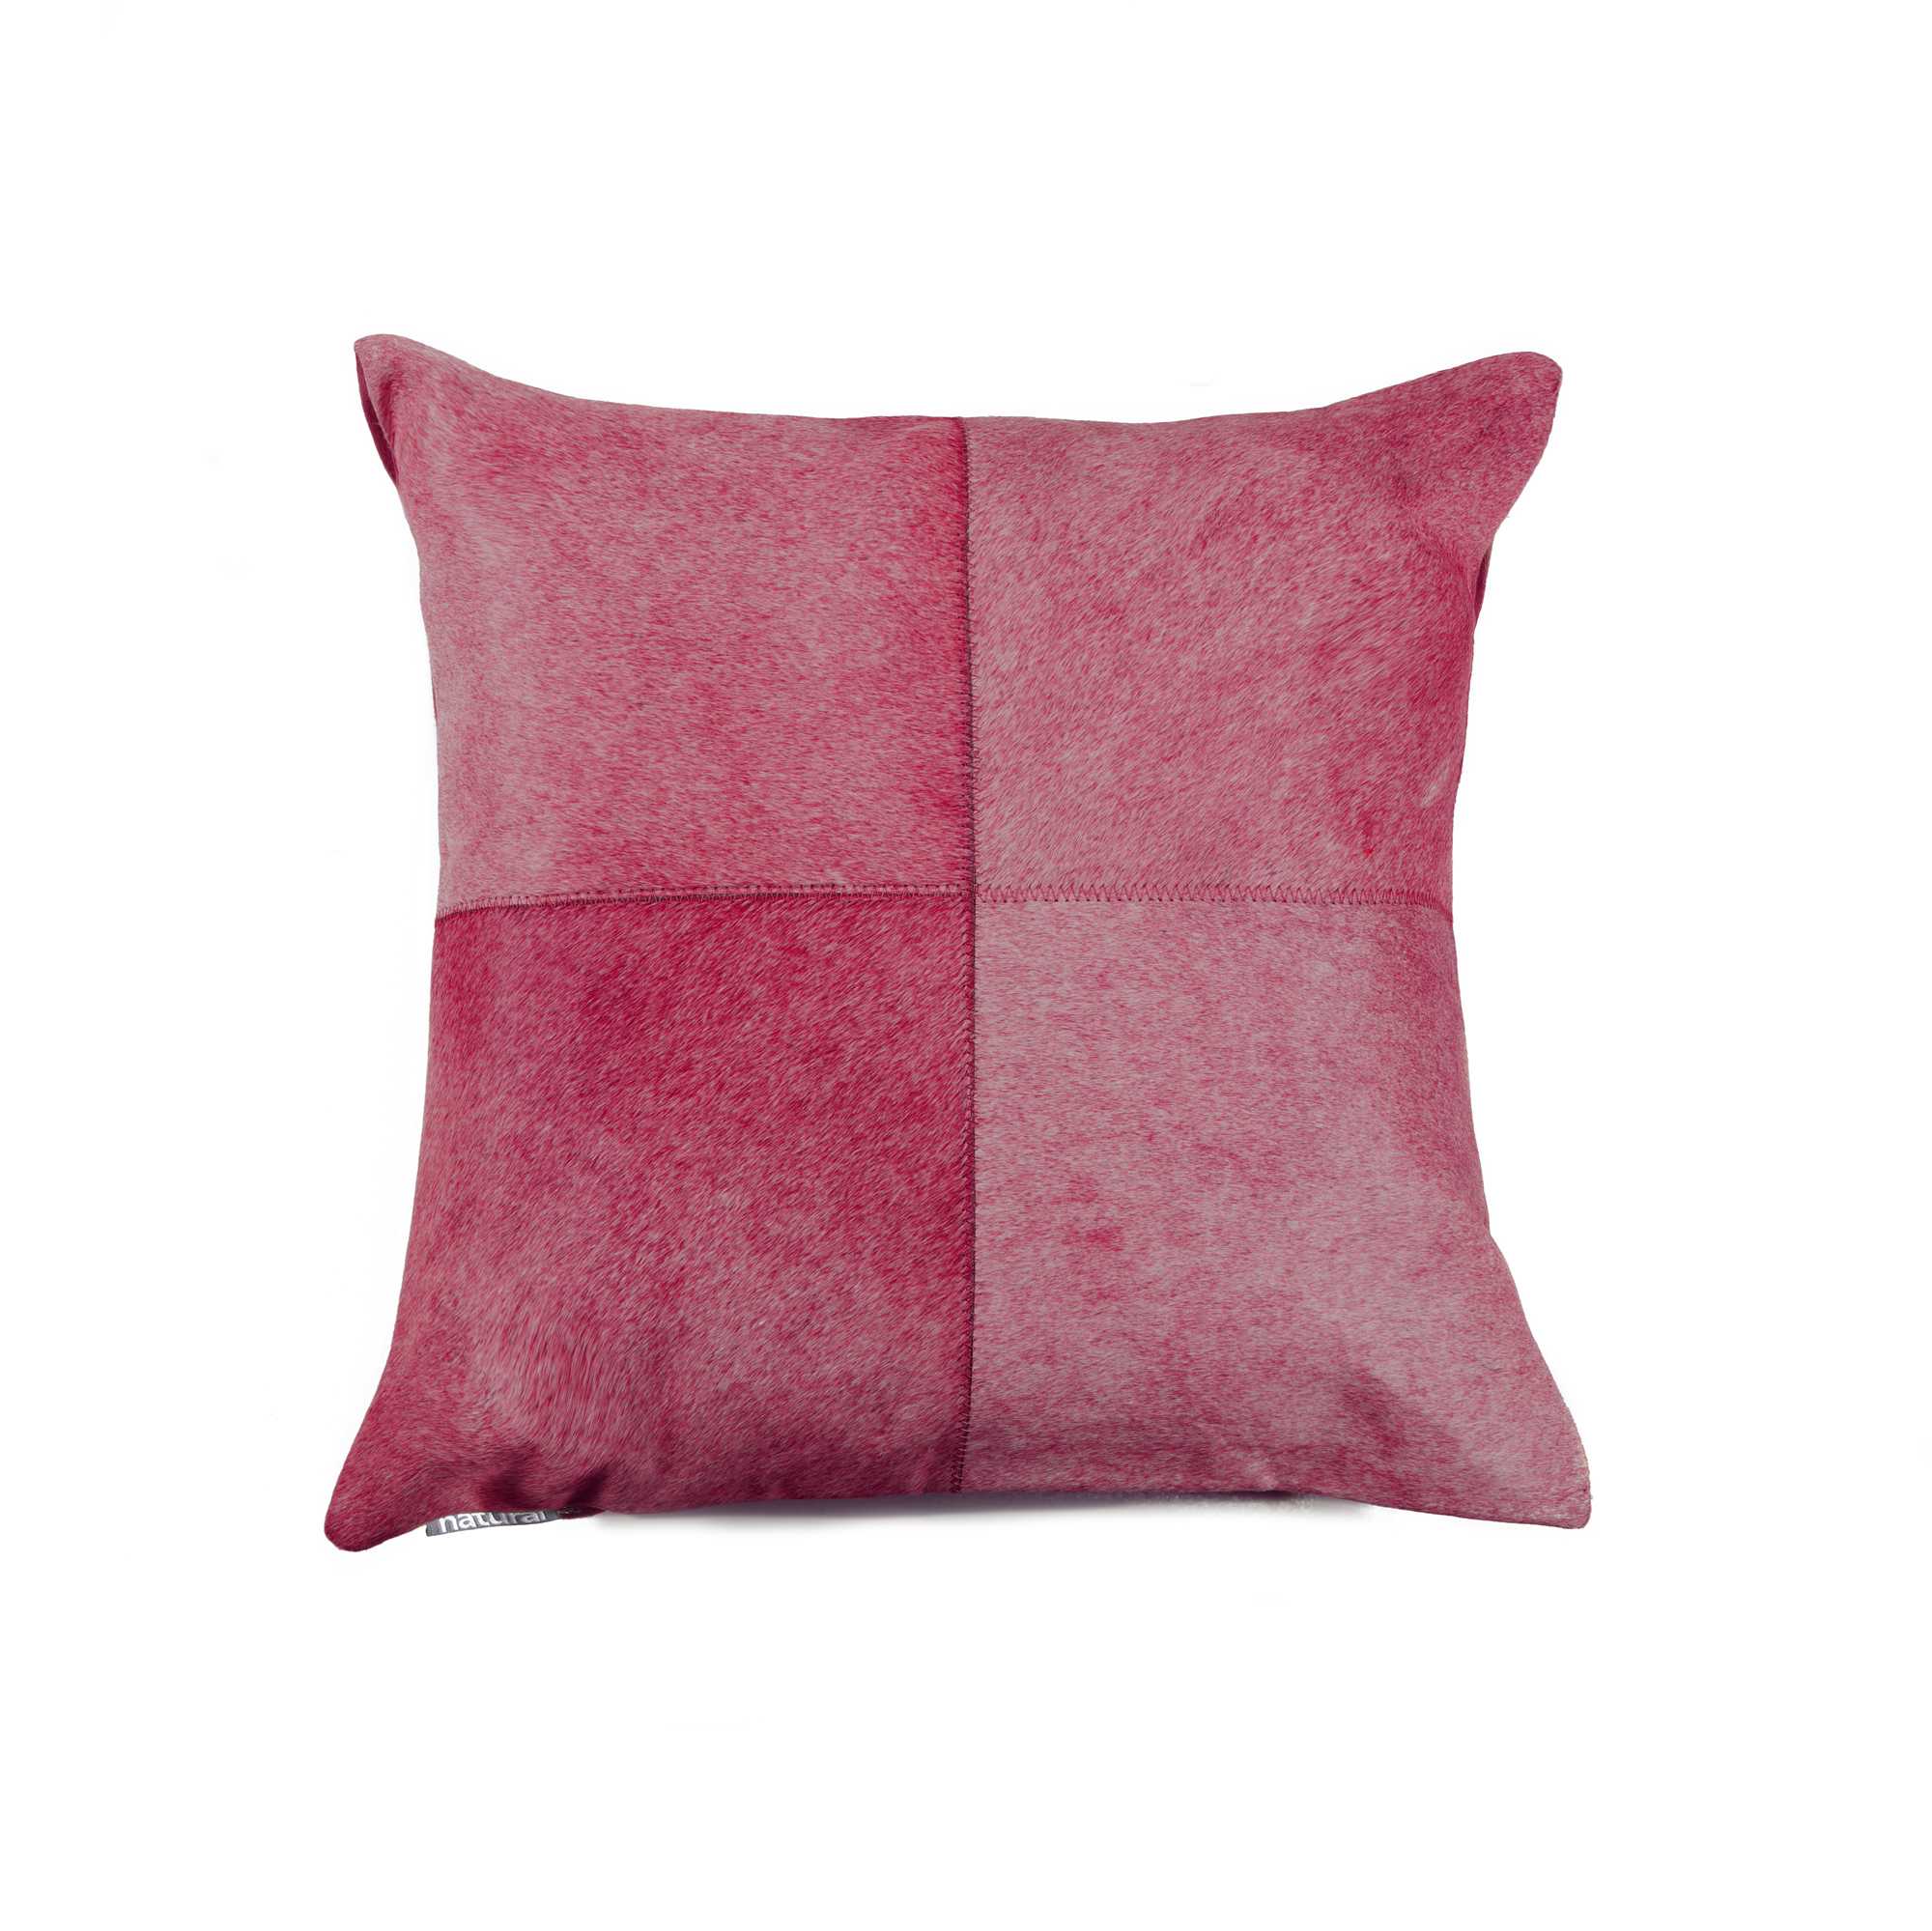 18" x 18" x 5" Fuchsia - Pillow